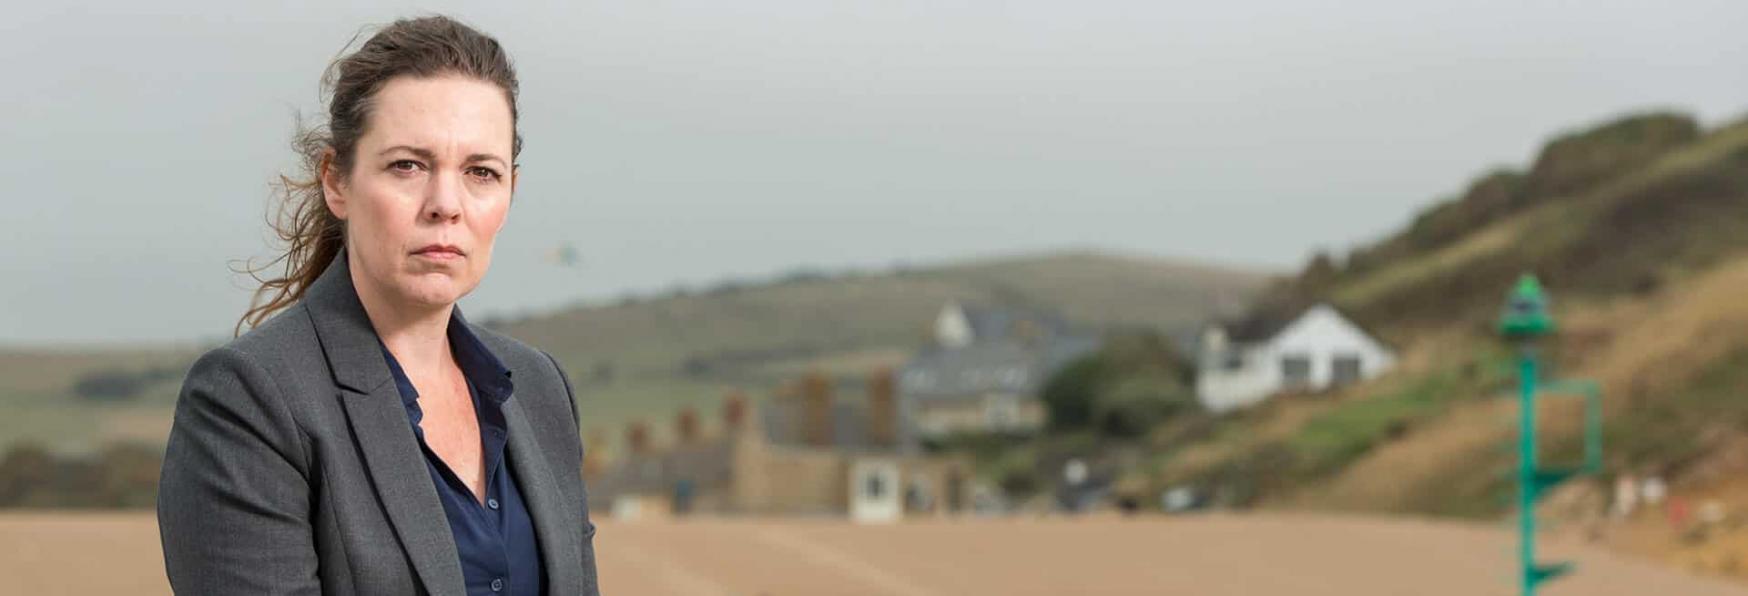 Grandi Speranze: Olivia Colman e Fionn Whitehead nel Cast della nuova Miniserie BBC